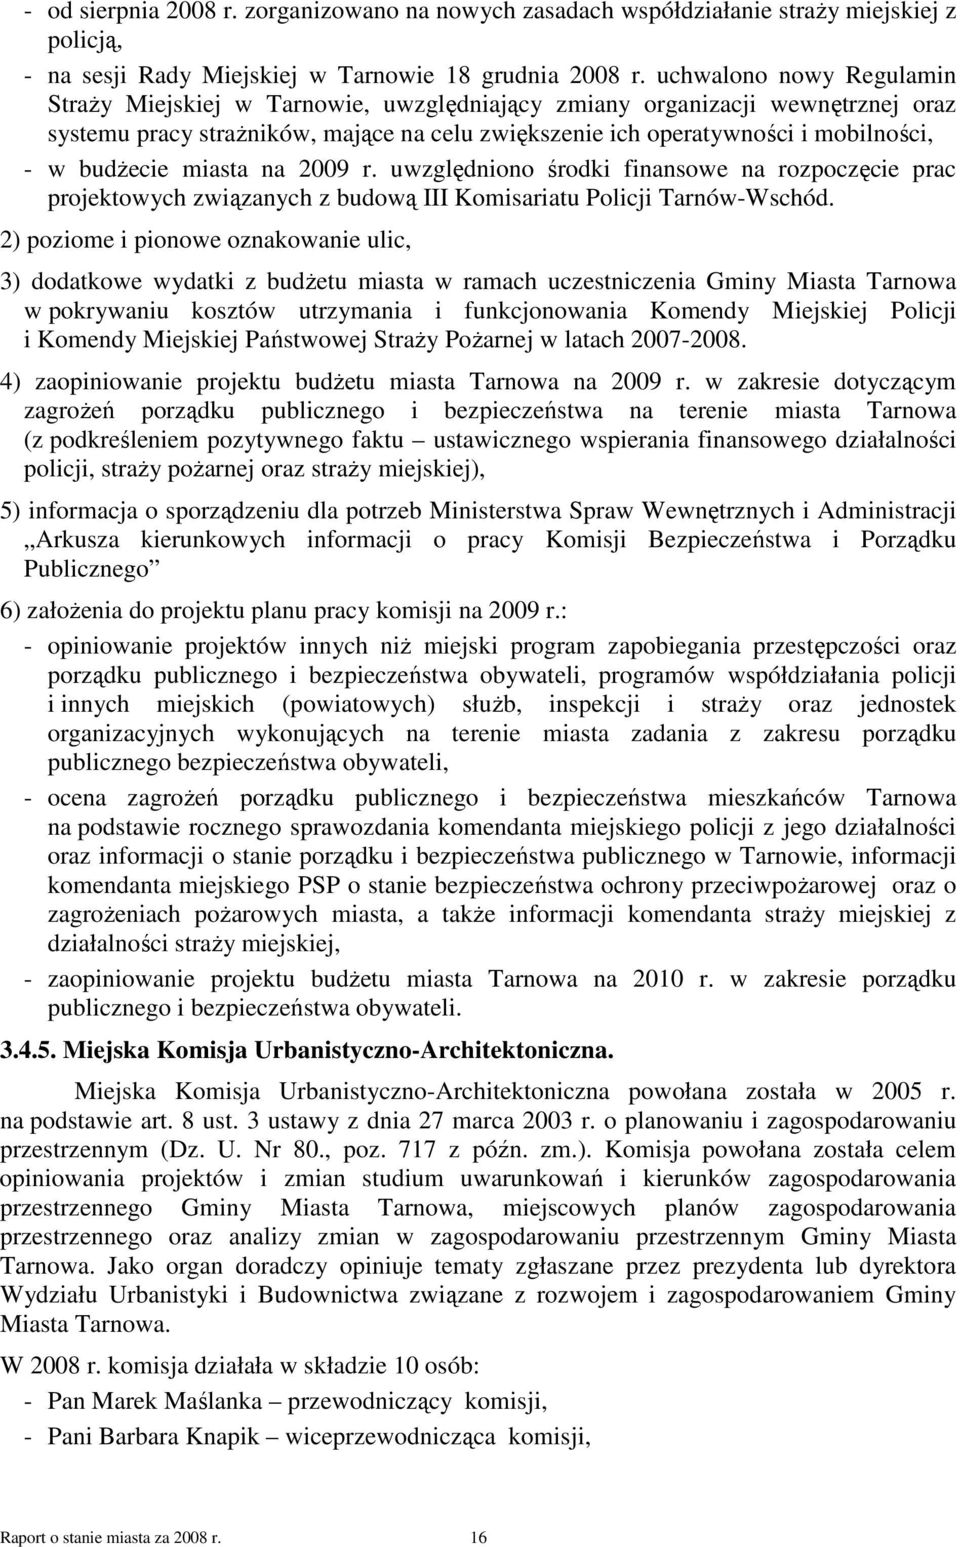 budŝecie miasta na 2009 r. uwzględniono środki finansowe na rozpoczęcie prac projektowych związanych z budową III Komisariatu Policji Tarnów-Wschód.